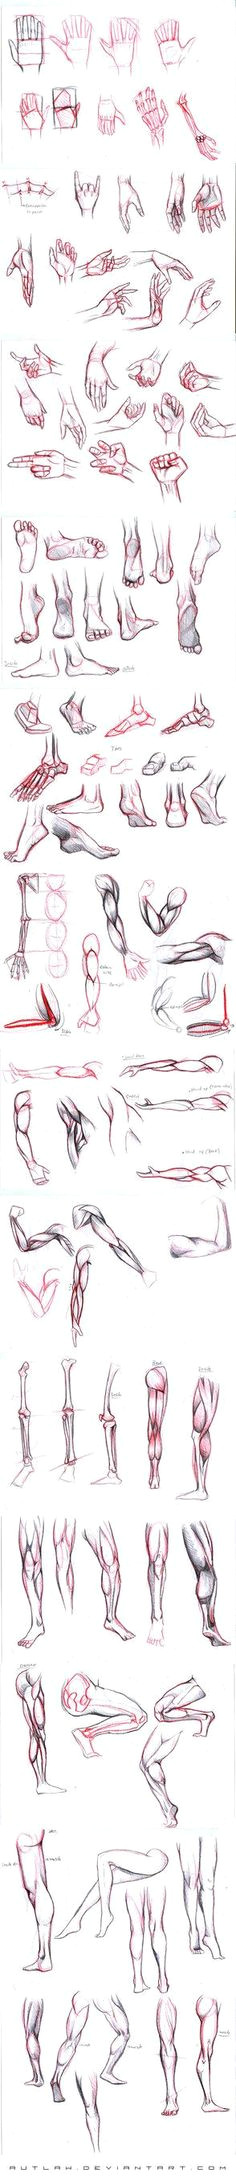 studies part 2 drawing handsdrawings